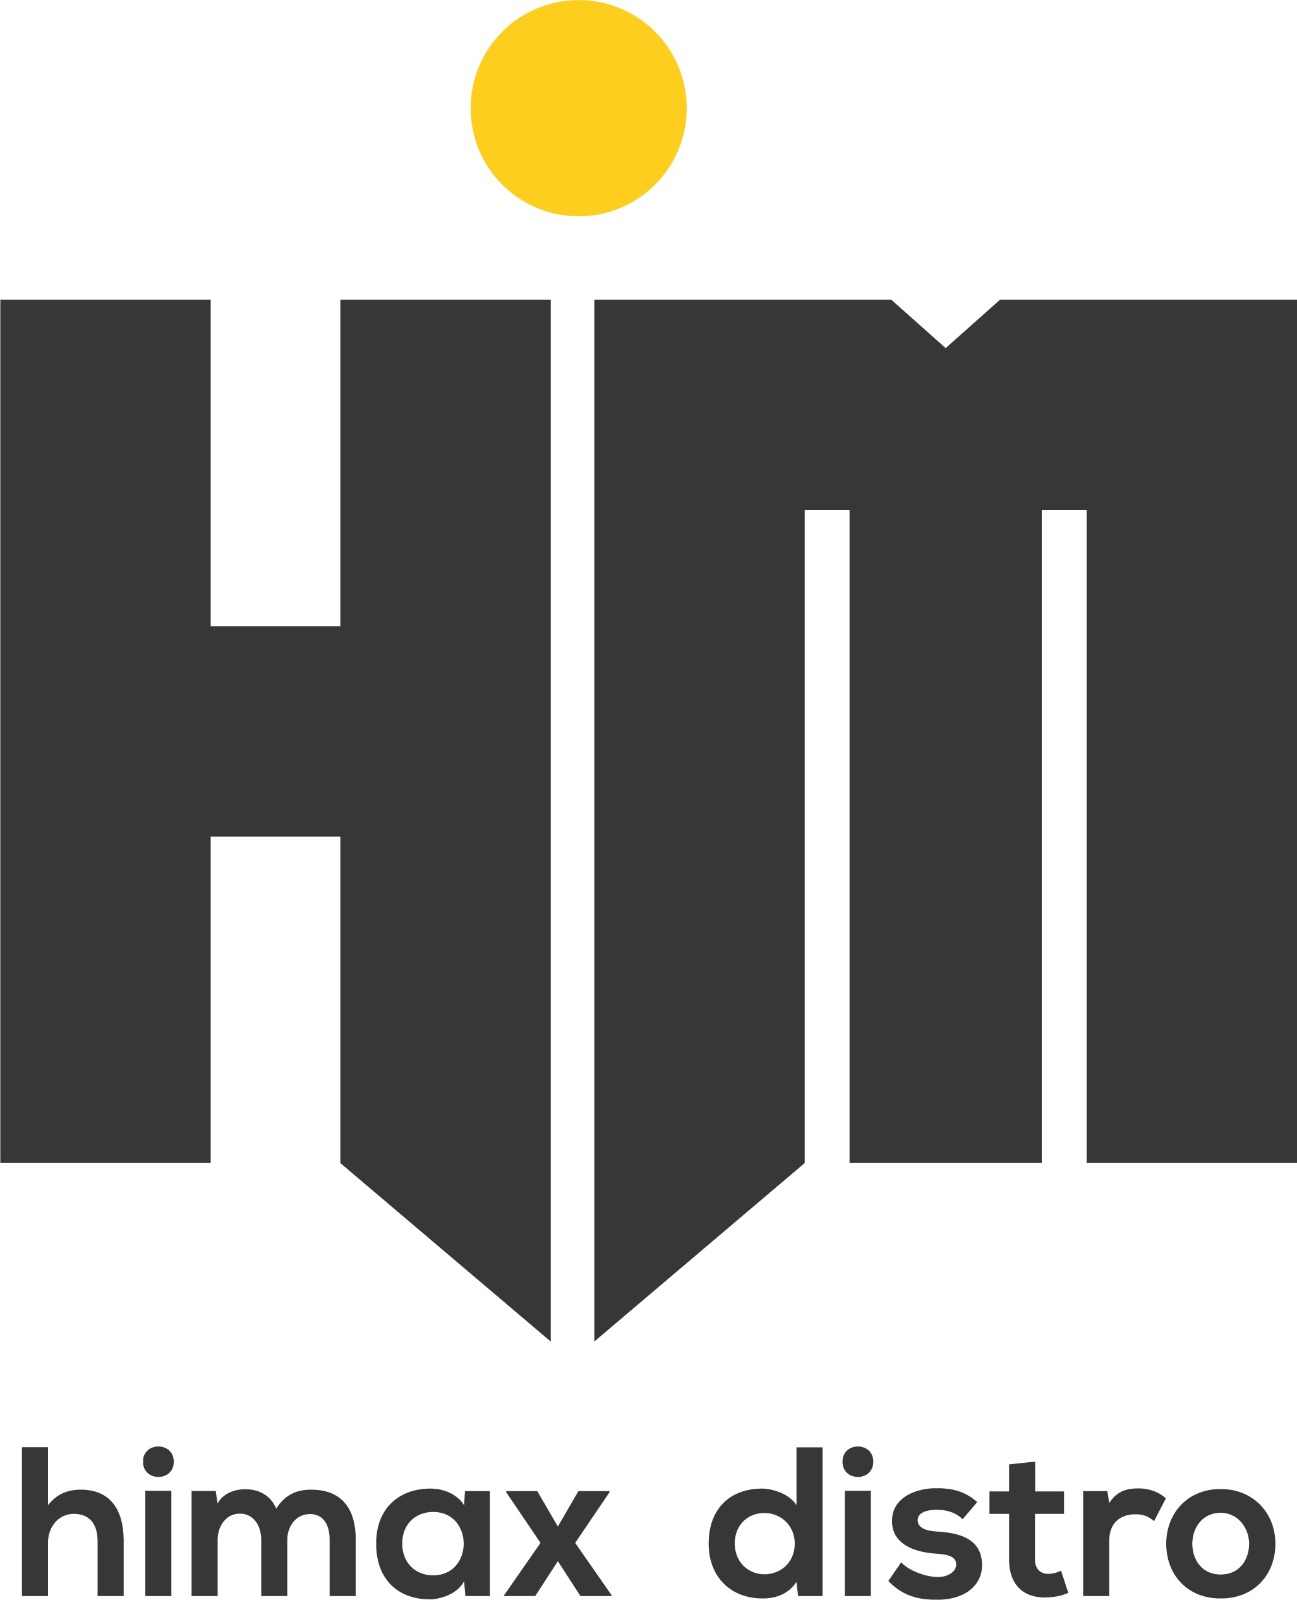 Company logo of Himax Distro